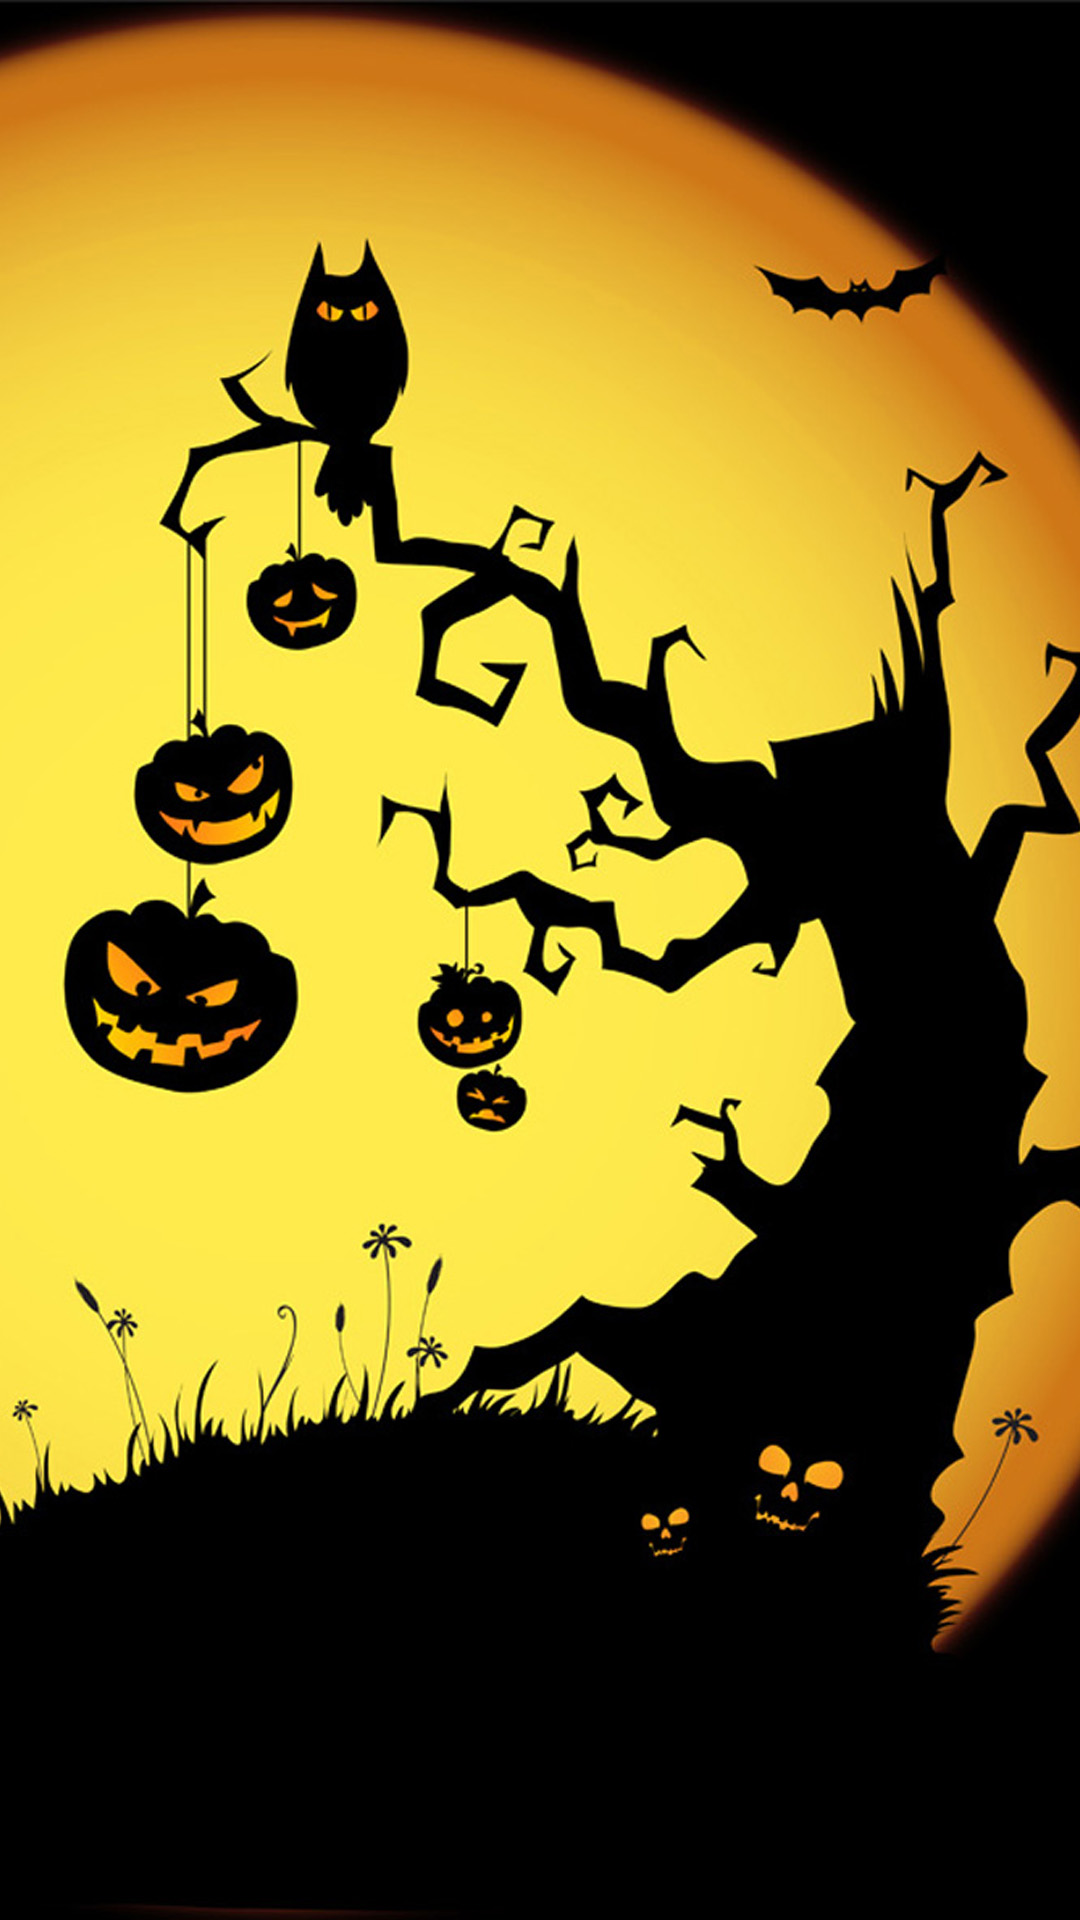 Free Halloween iPhone Wallpaper Backgrounds | PixelsTalk.Net